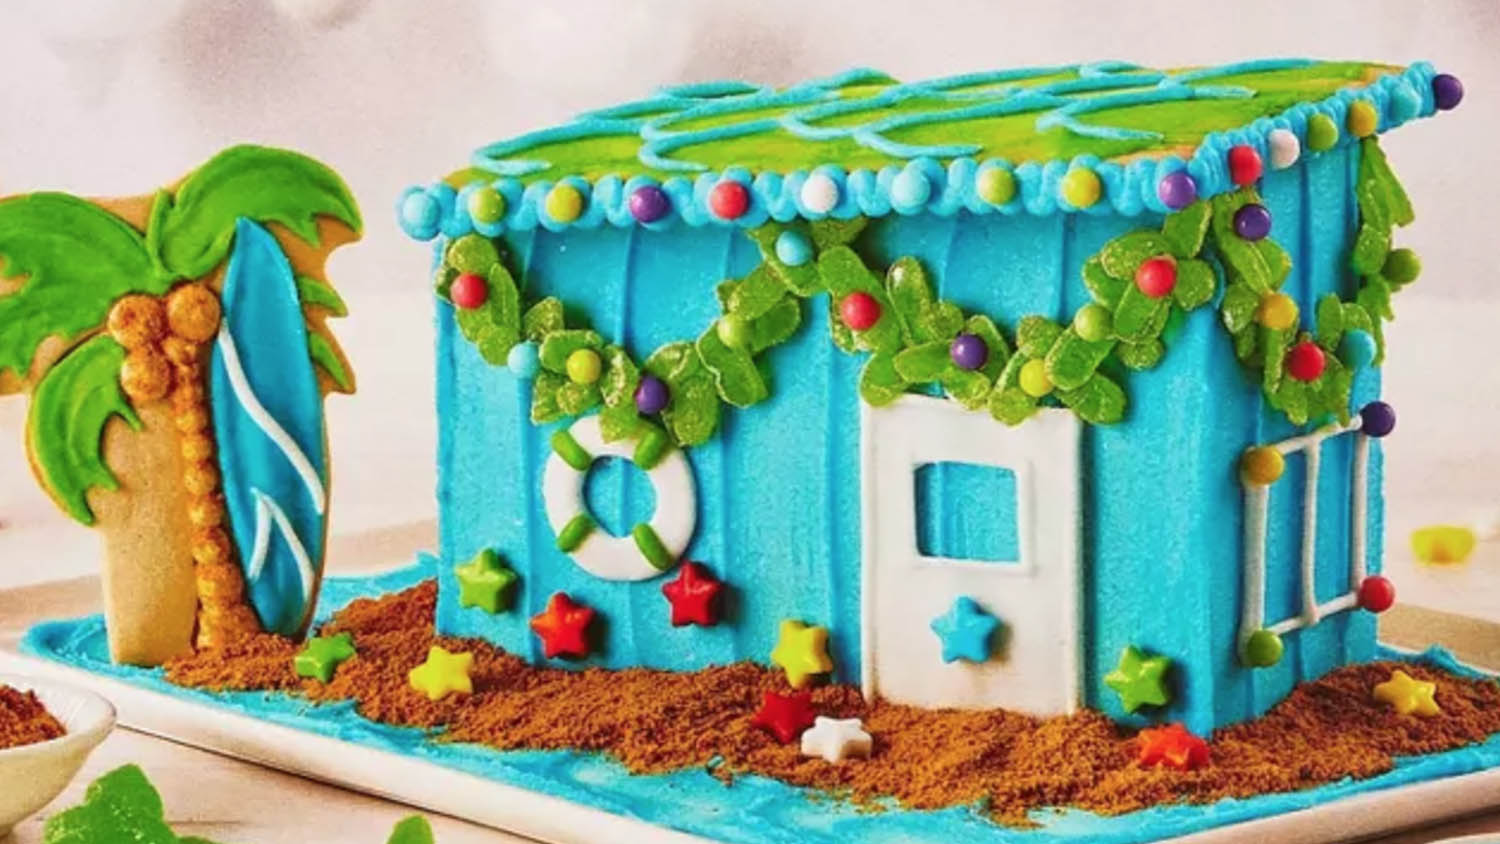 Gingerbread beach house